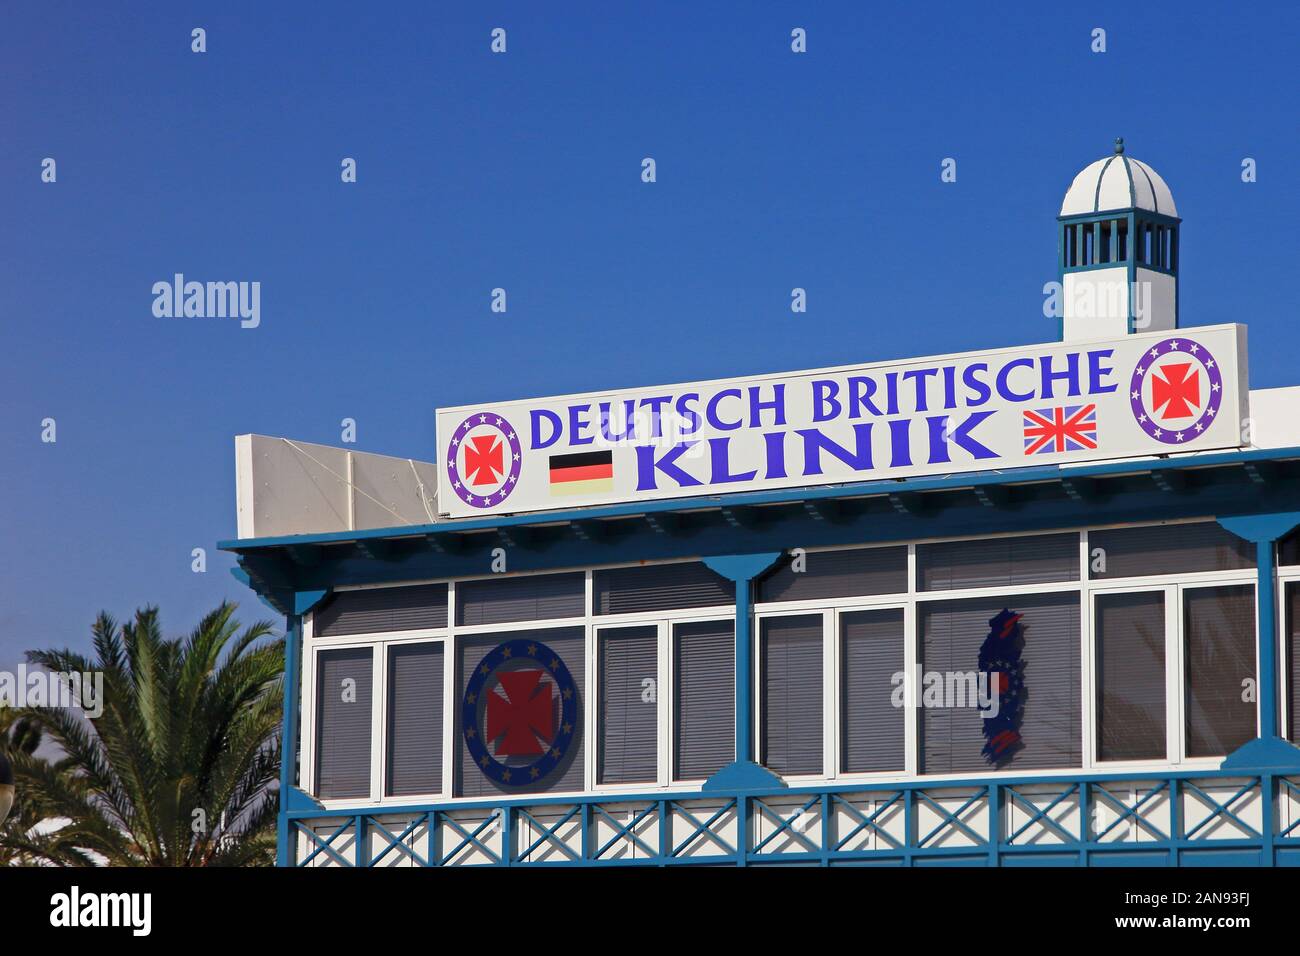 Deutsch Britische Klinik, Puerto del Carmen, Lanzarote Stock Photo